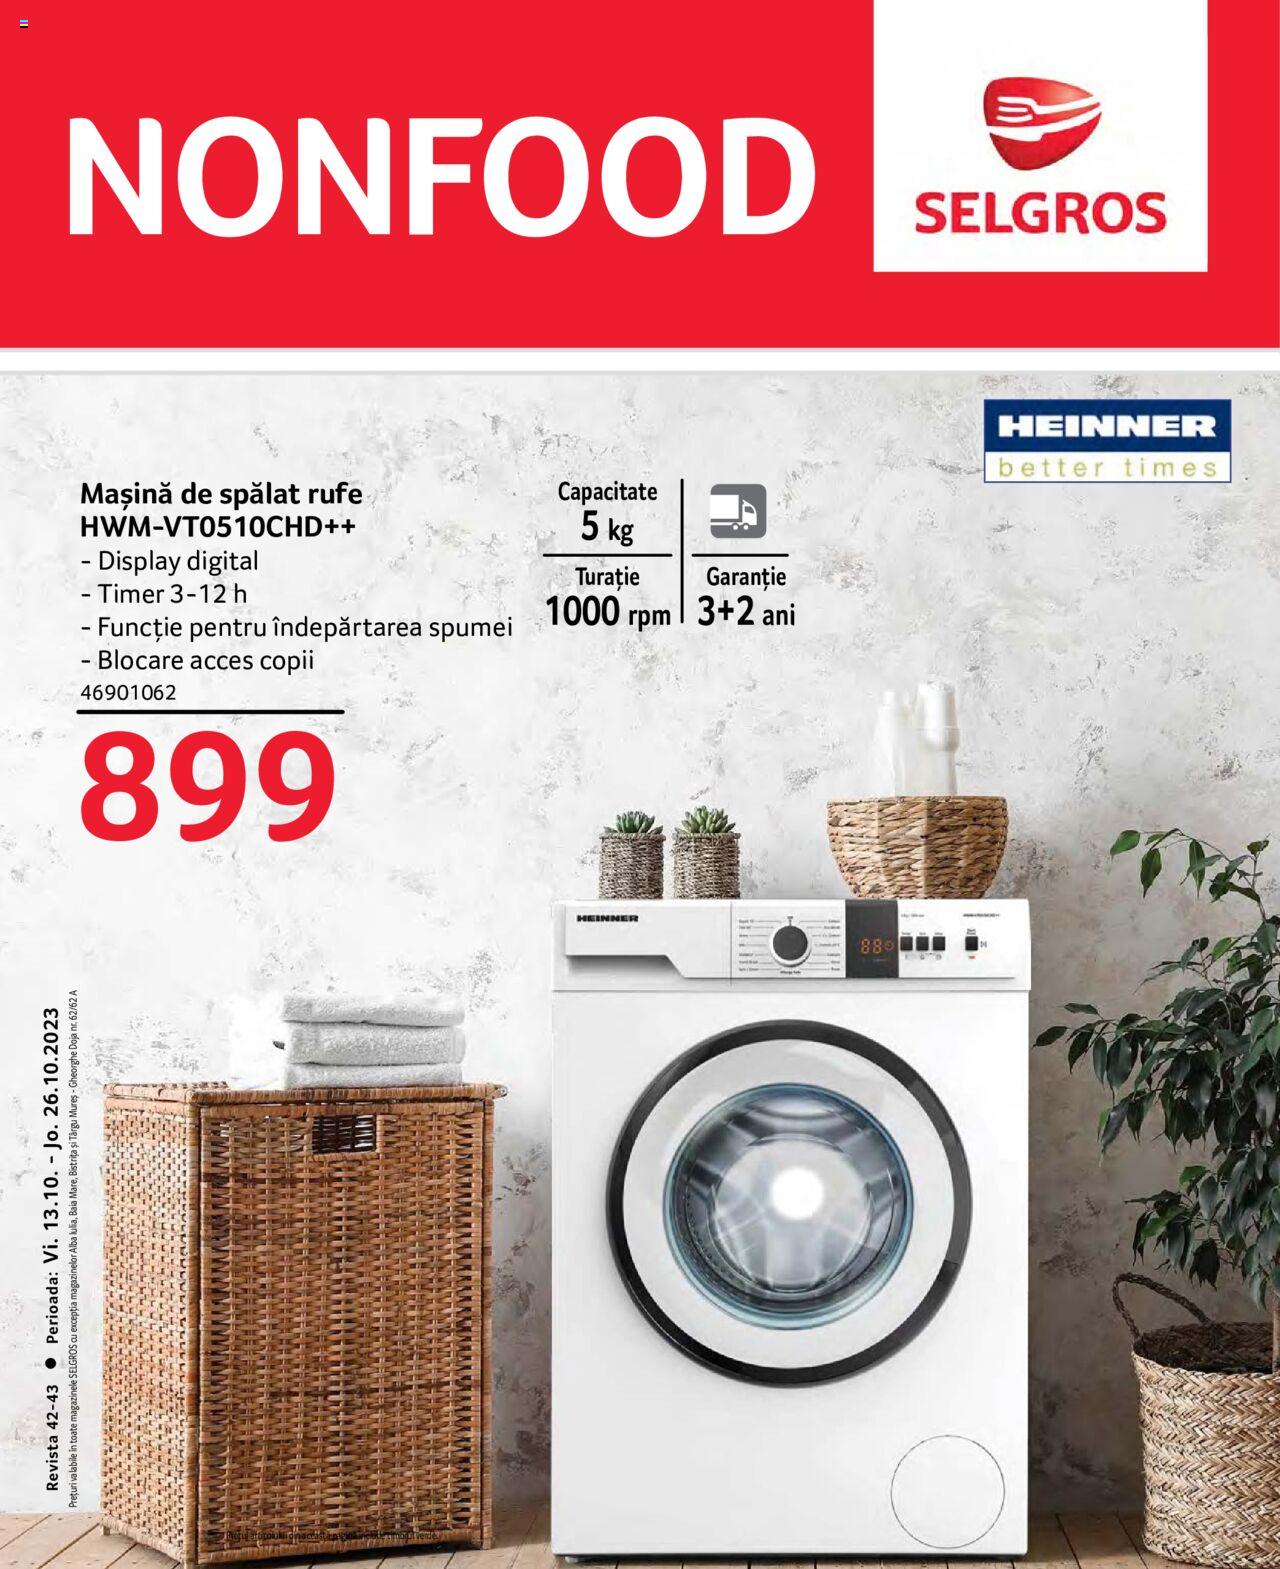 Selgros - Каталог - Nonfood - 1